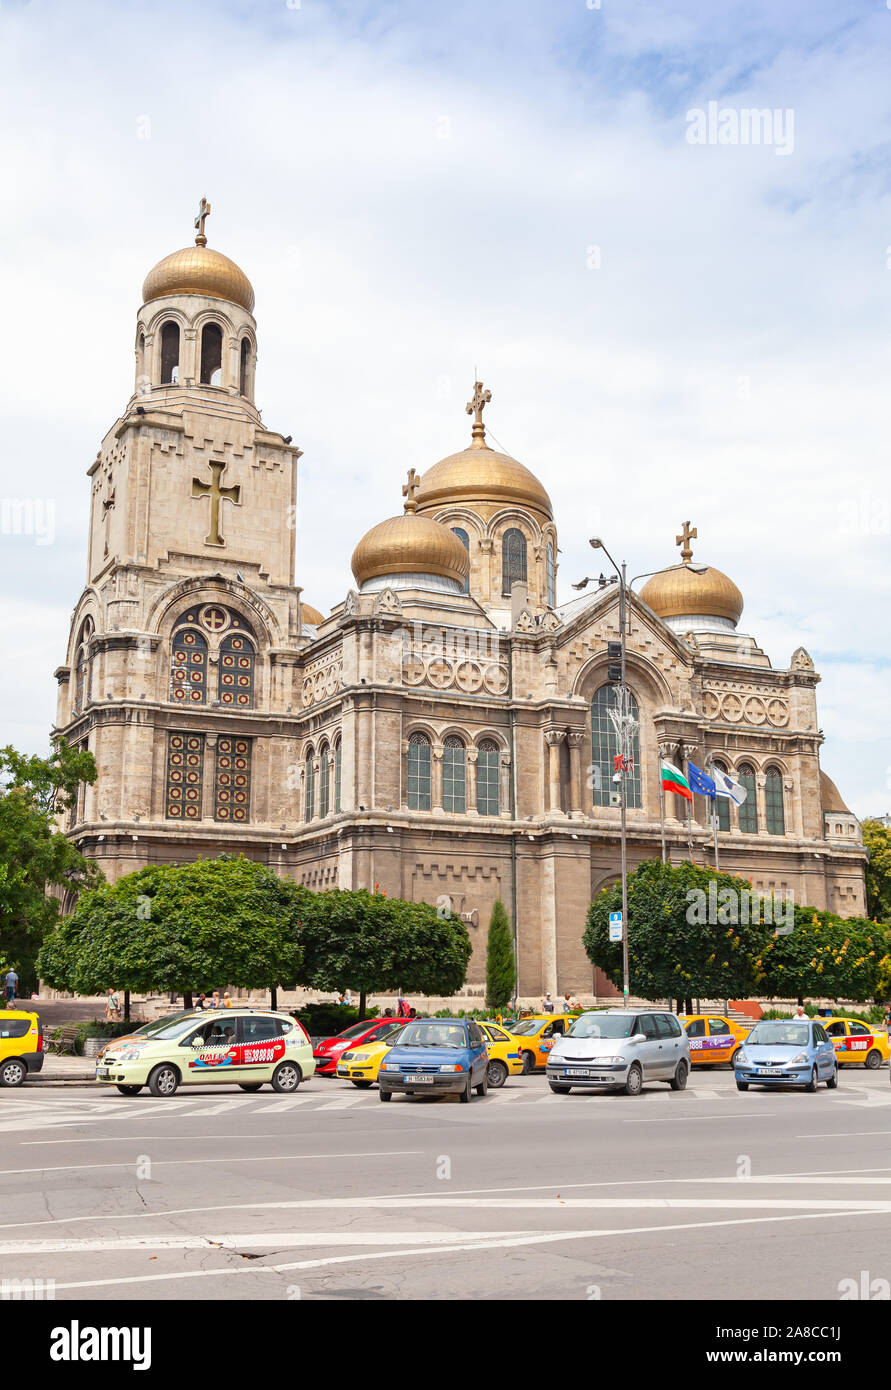 Varna, Bulgaria - Luglio 17, 2014: Dormizione della Madre di Dio cattedrale, Varna. Verticale di street view con macchine parcheggiate Foto Stock